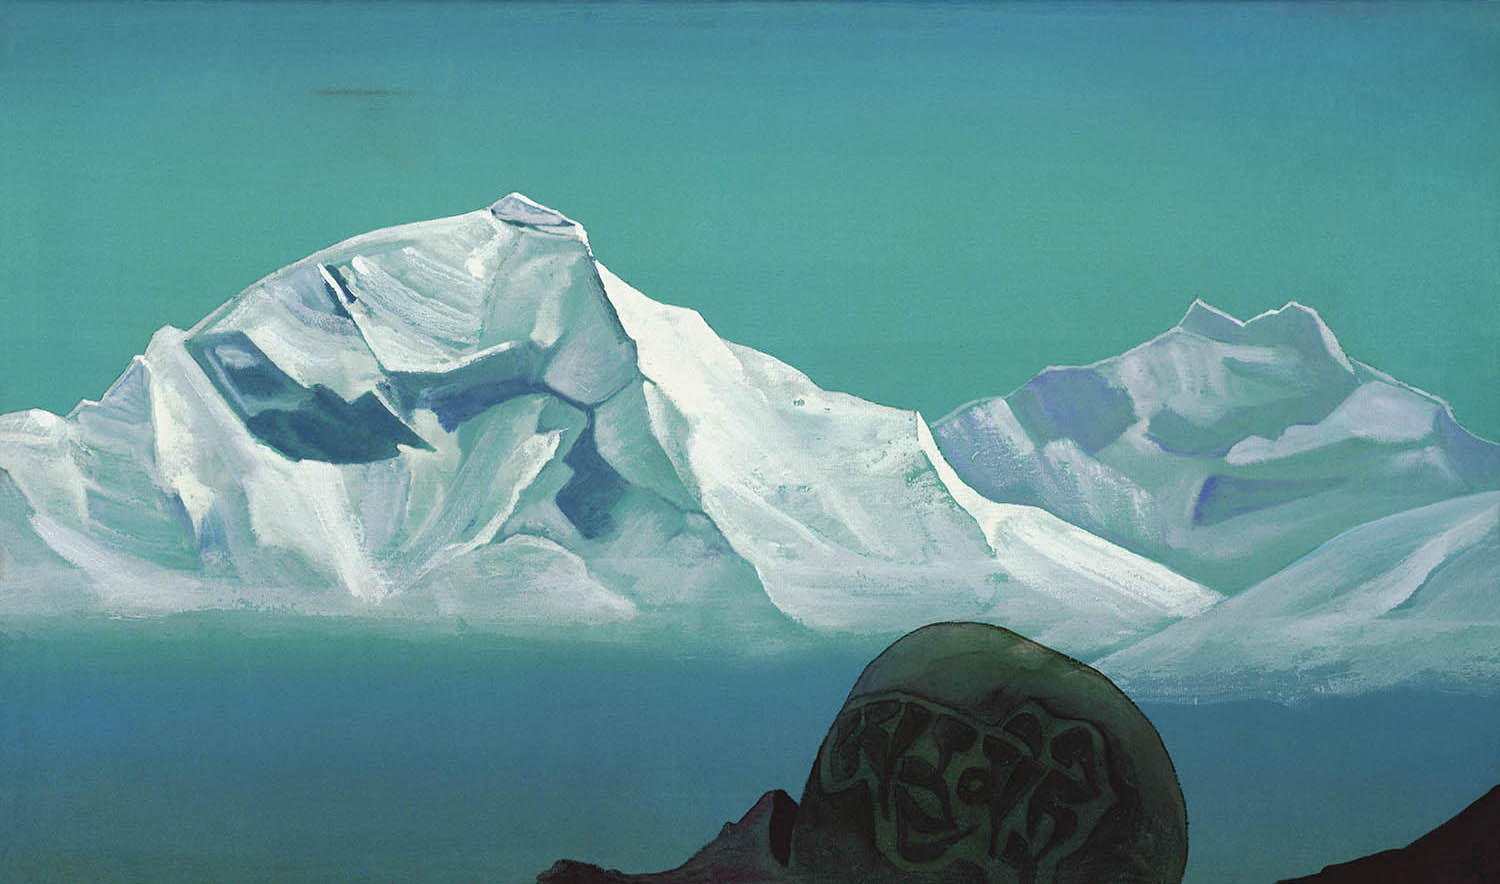 Постер "Путь на Кайлас", серия "Святые горы", 1933, Н.К. Рерих, репродукция (24,5 х 41 см), печать на шелке. 